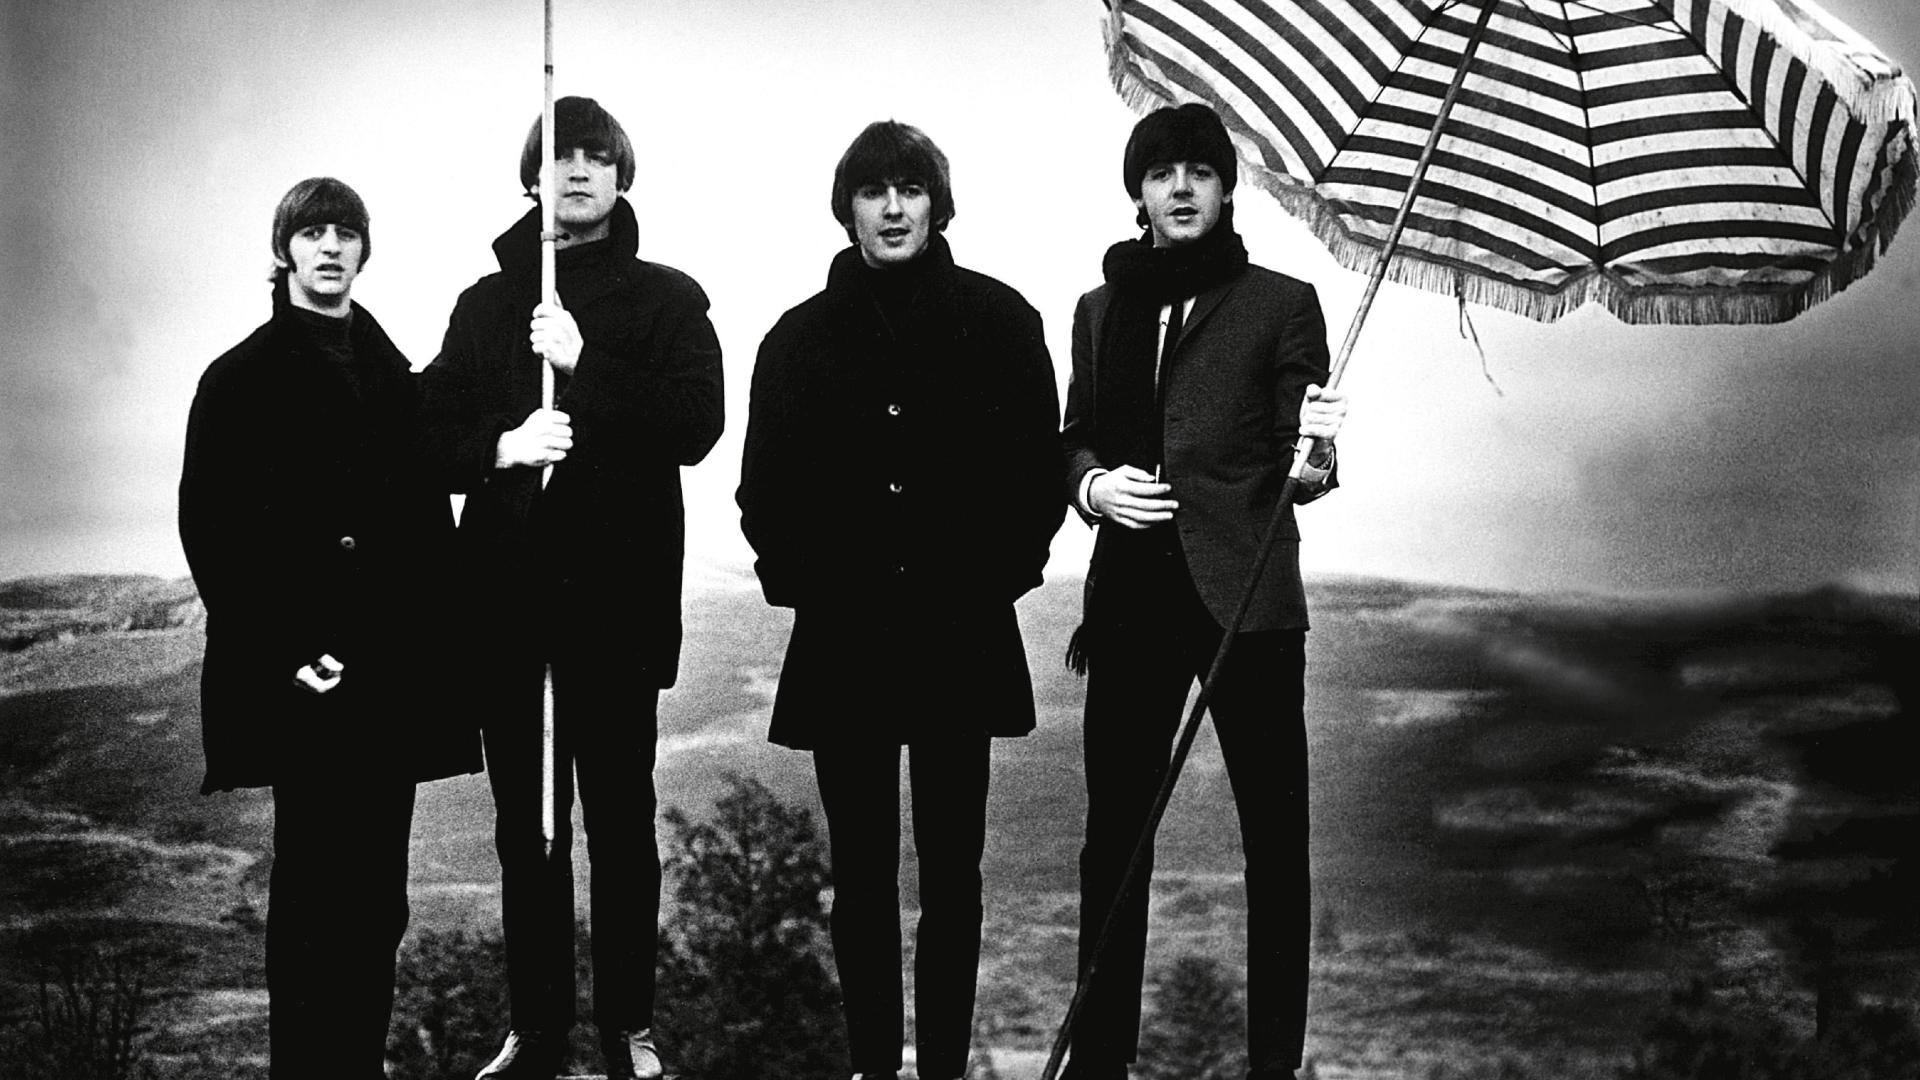 Fondos de pantalla de The Beatles Wallpapers de The Beatles Fondos